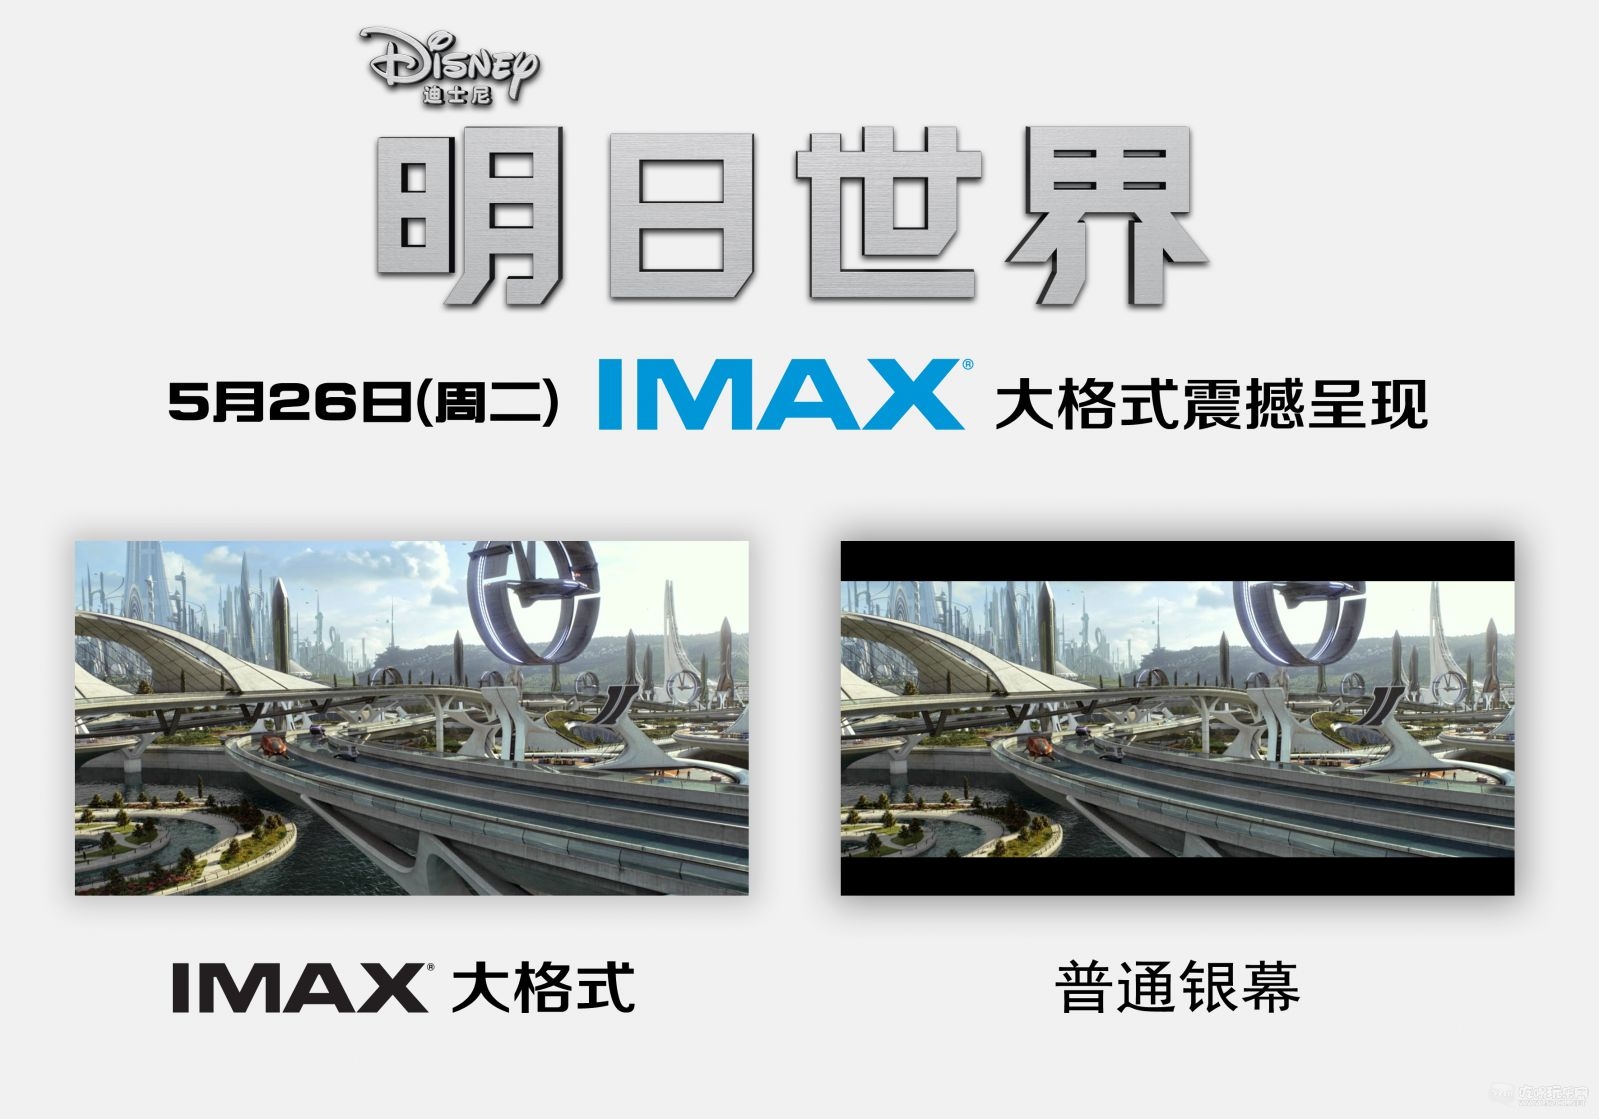 IMAX明日世界大格式对比图.jpg